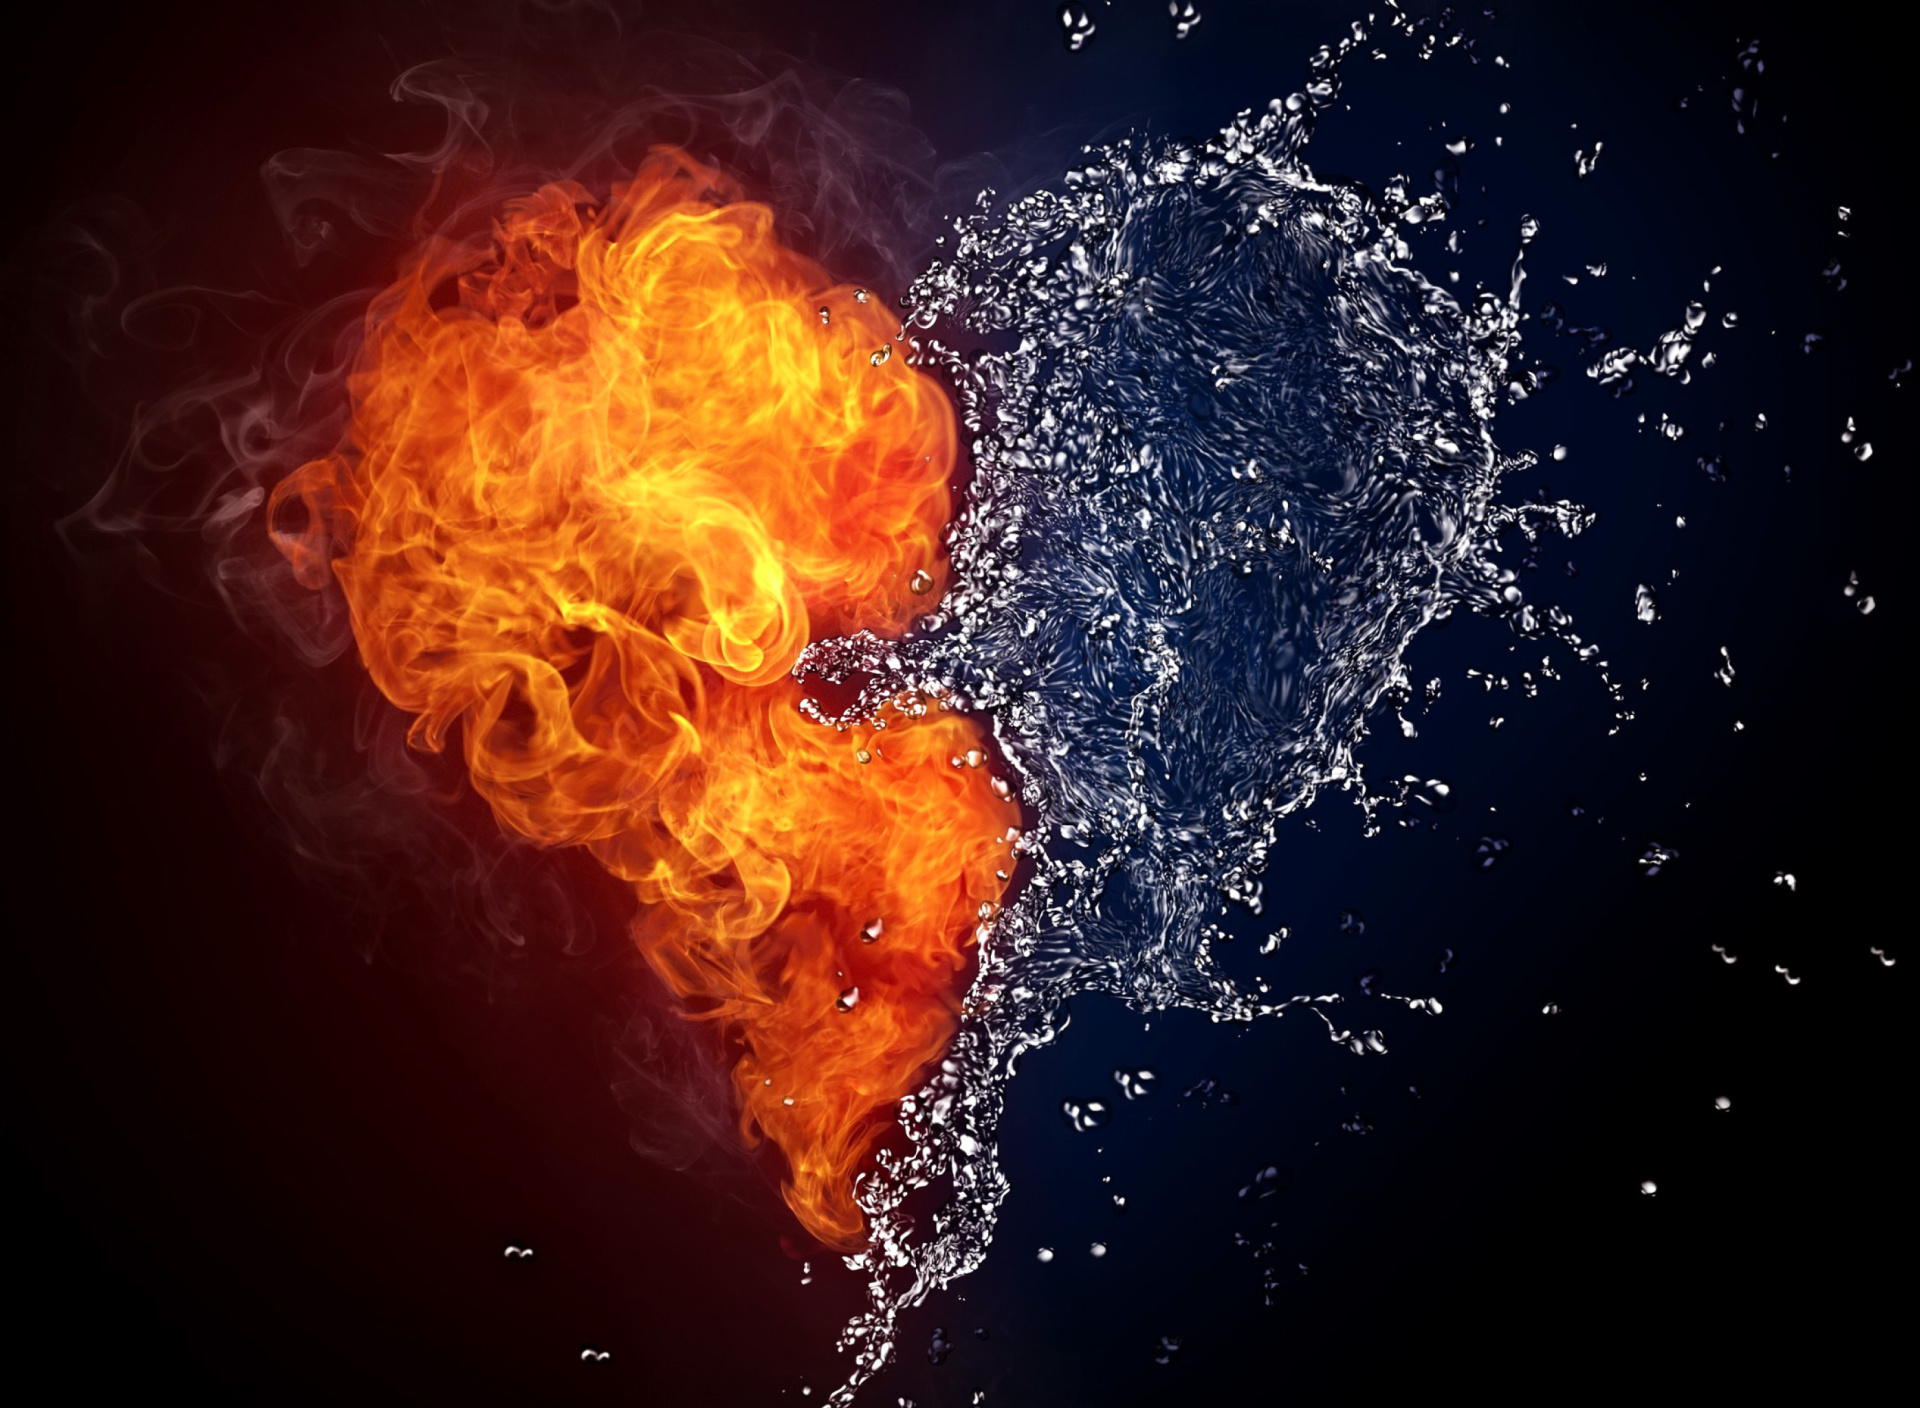 Das Water and Fire Heart Wallpaper 1920x1408